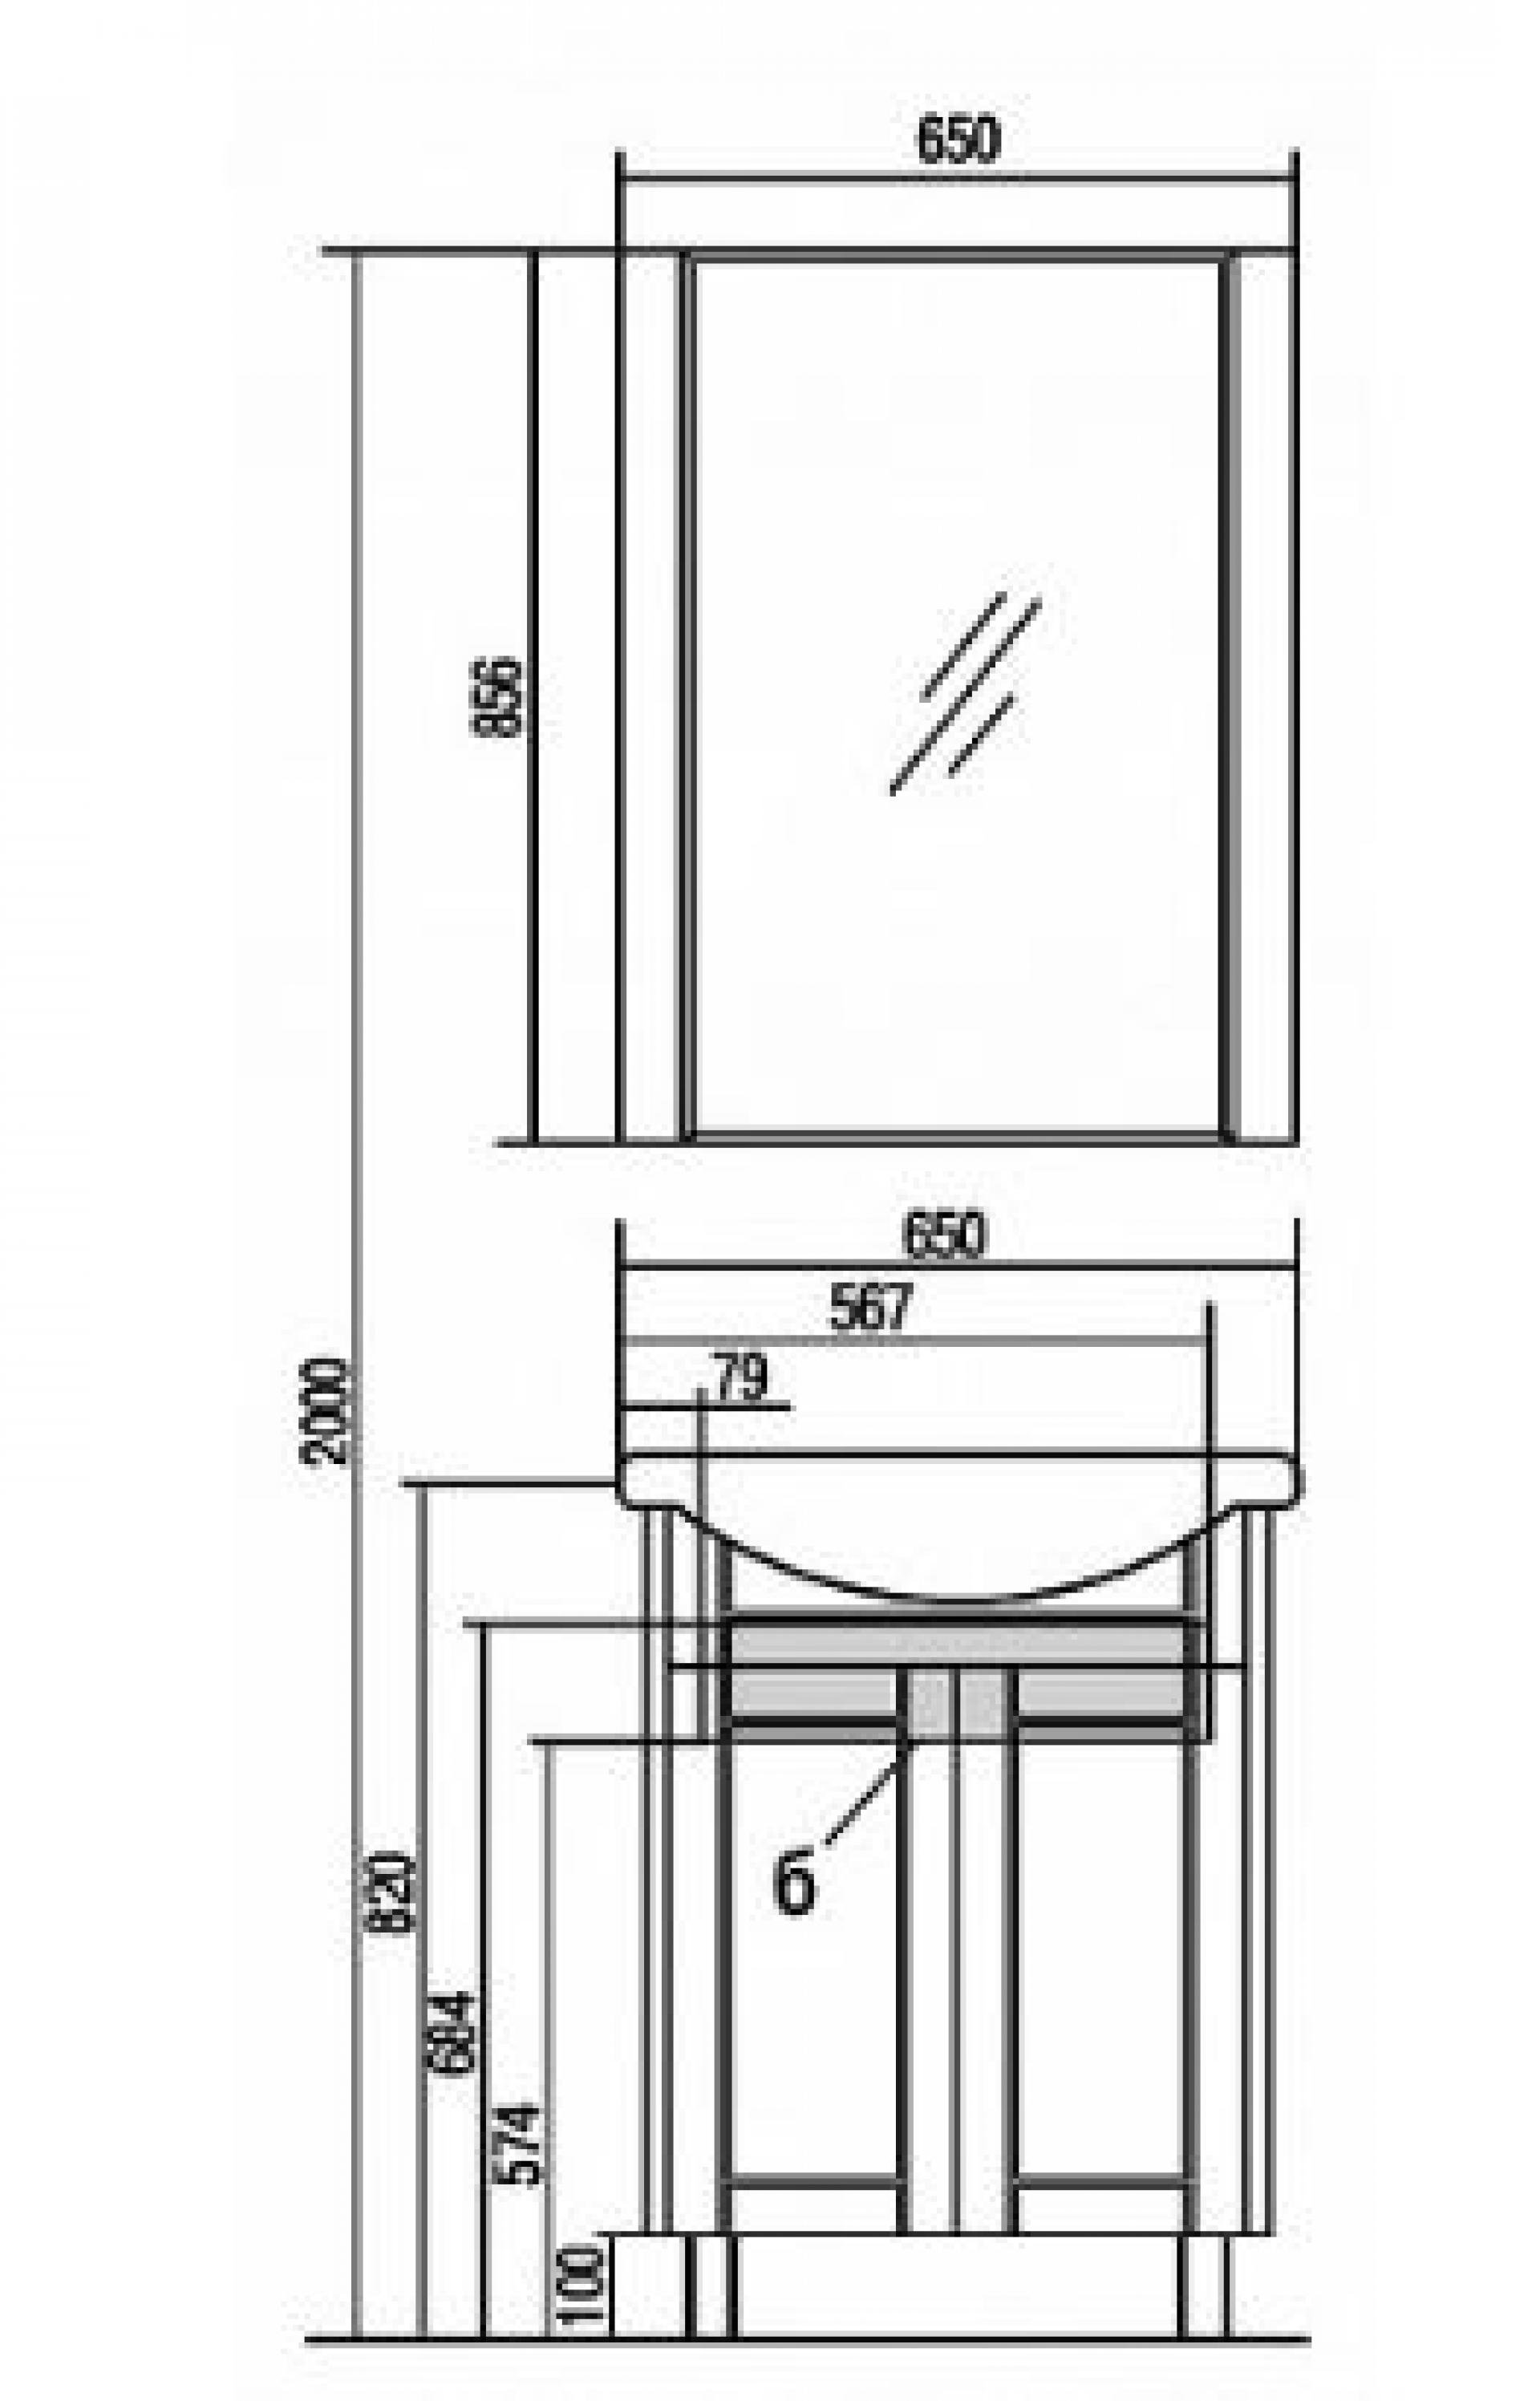 Мебель для ванной 65.5х44.5 Акватон Альпина 65 венге